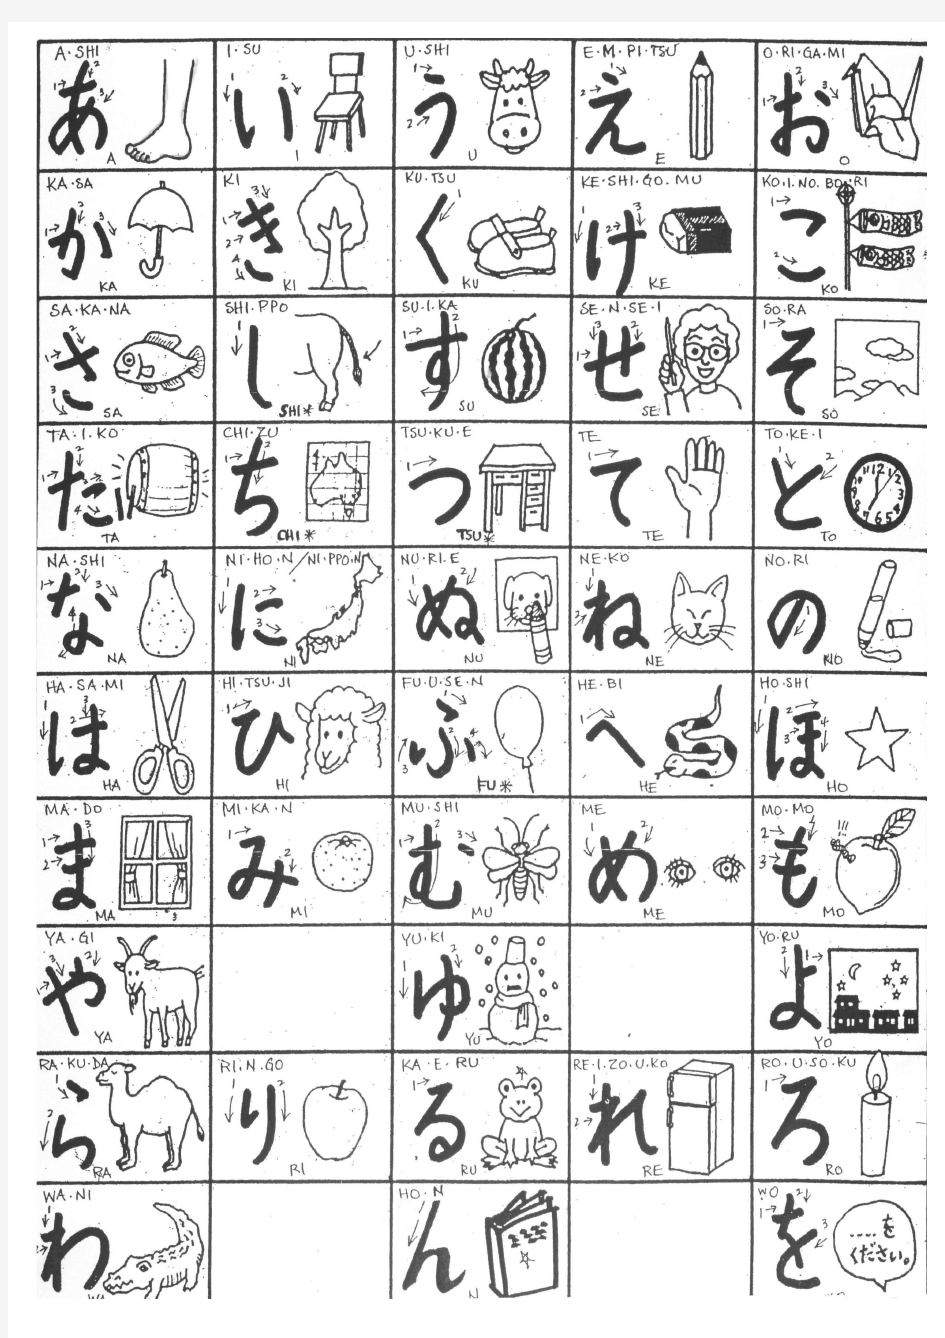 [日语]平假名 五十音图 含笔顺和画儿 Japanese Hiragana with strokes